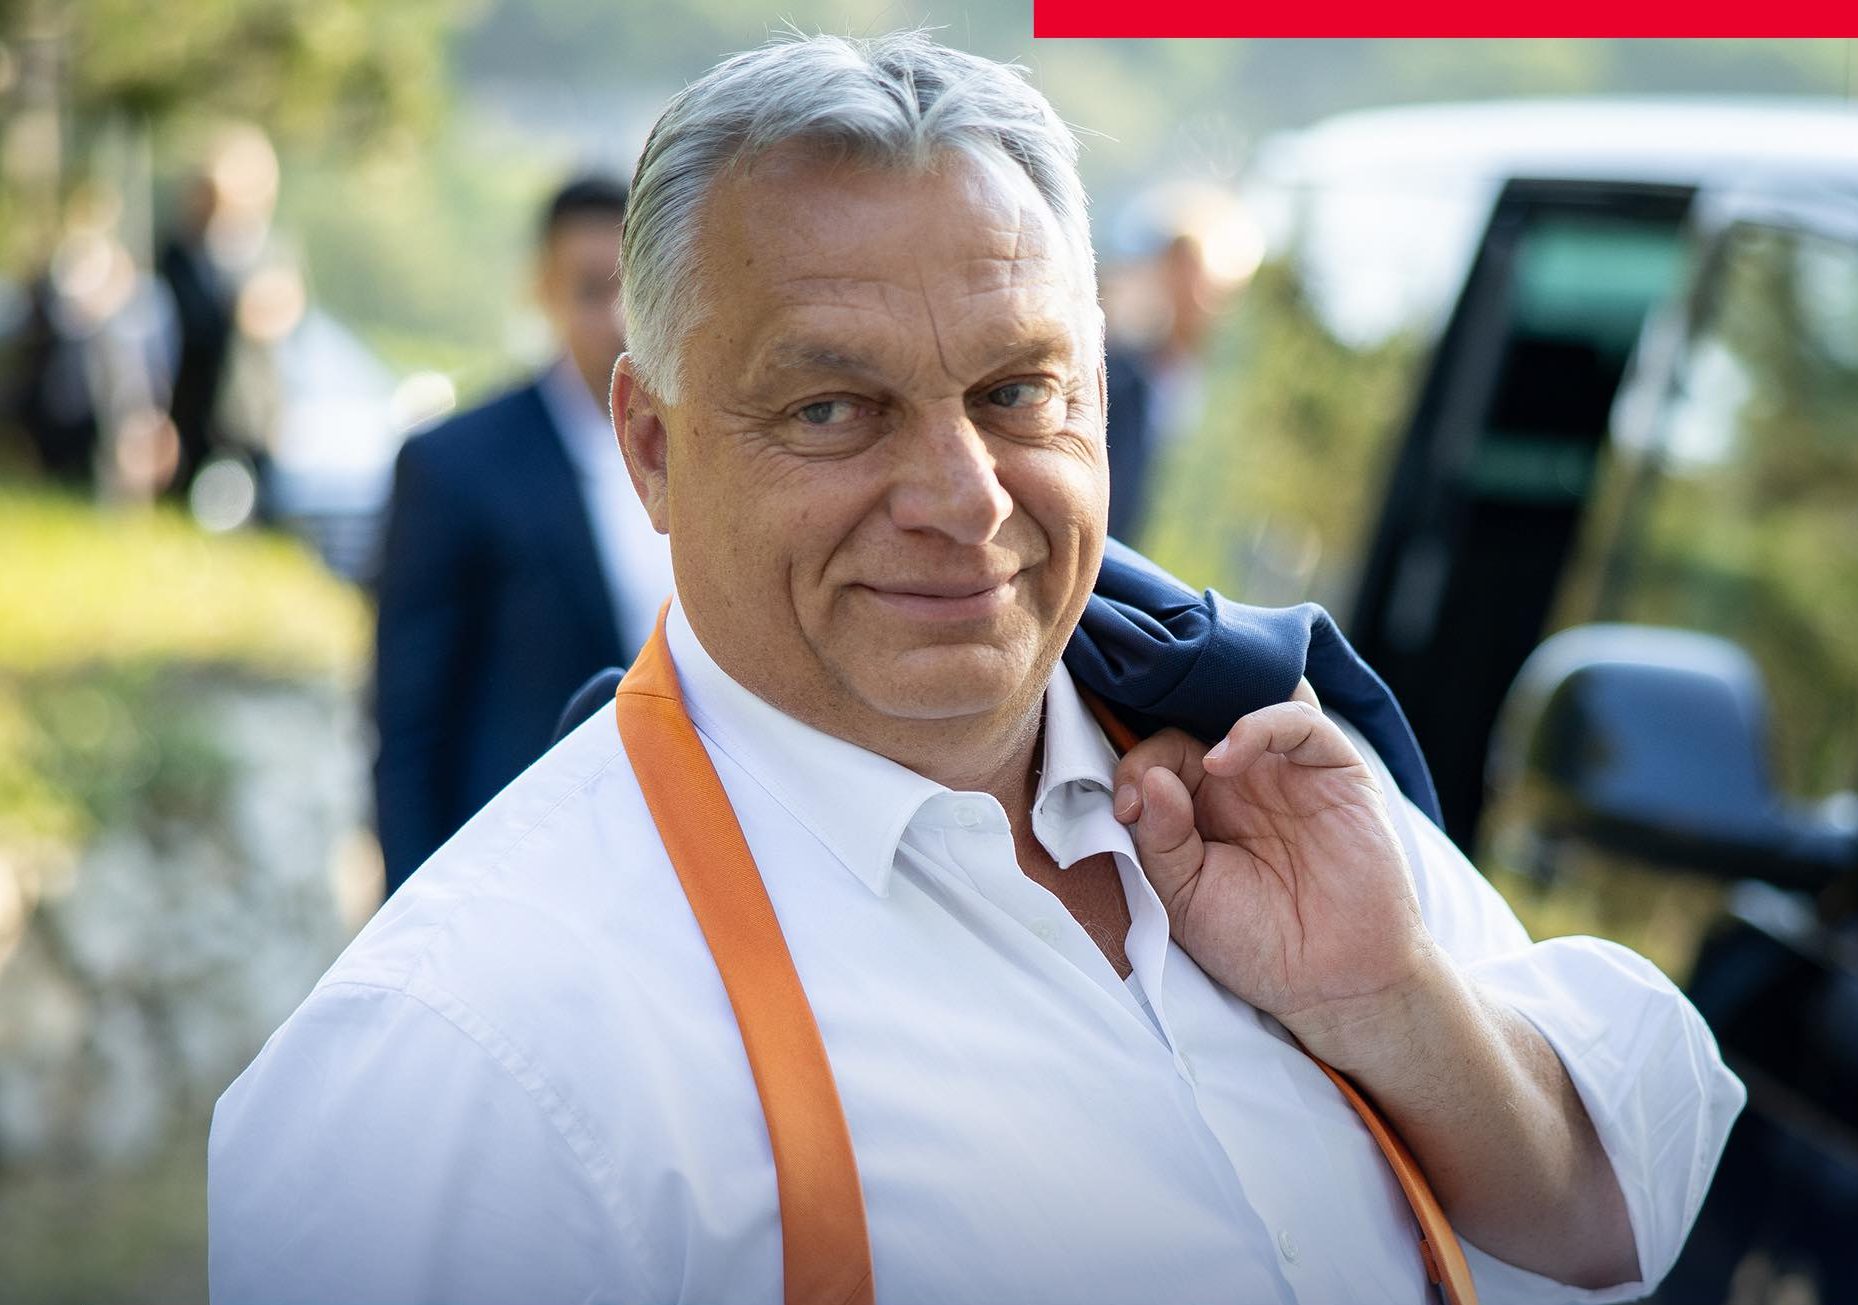 Percek alatt összeomolhatnak a nyugati típusú kormányok Magyarországon – mondja Orbán Viktor